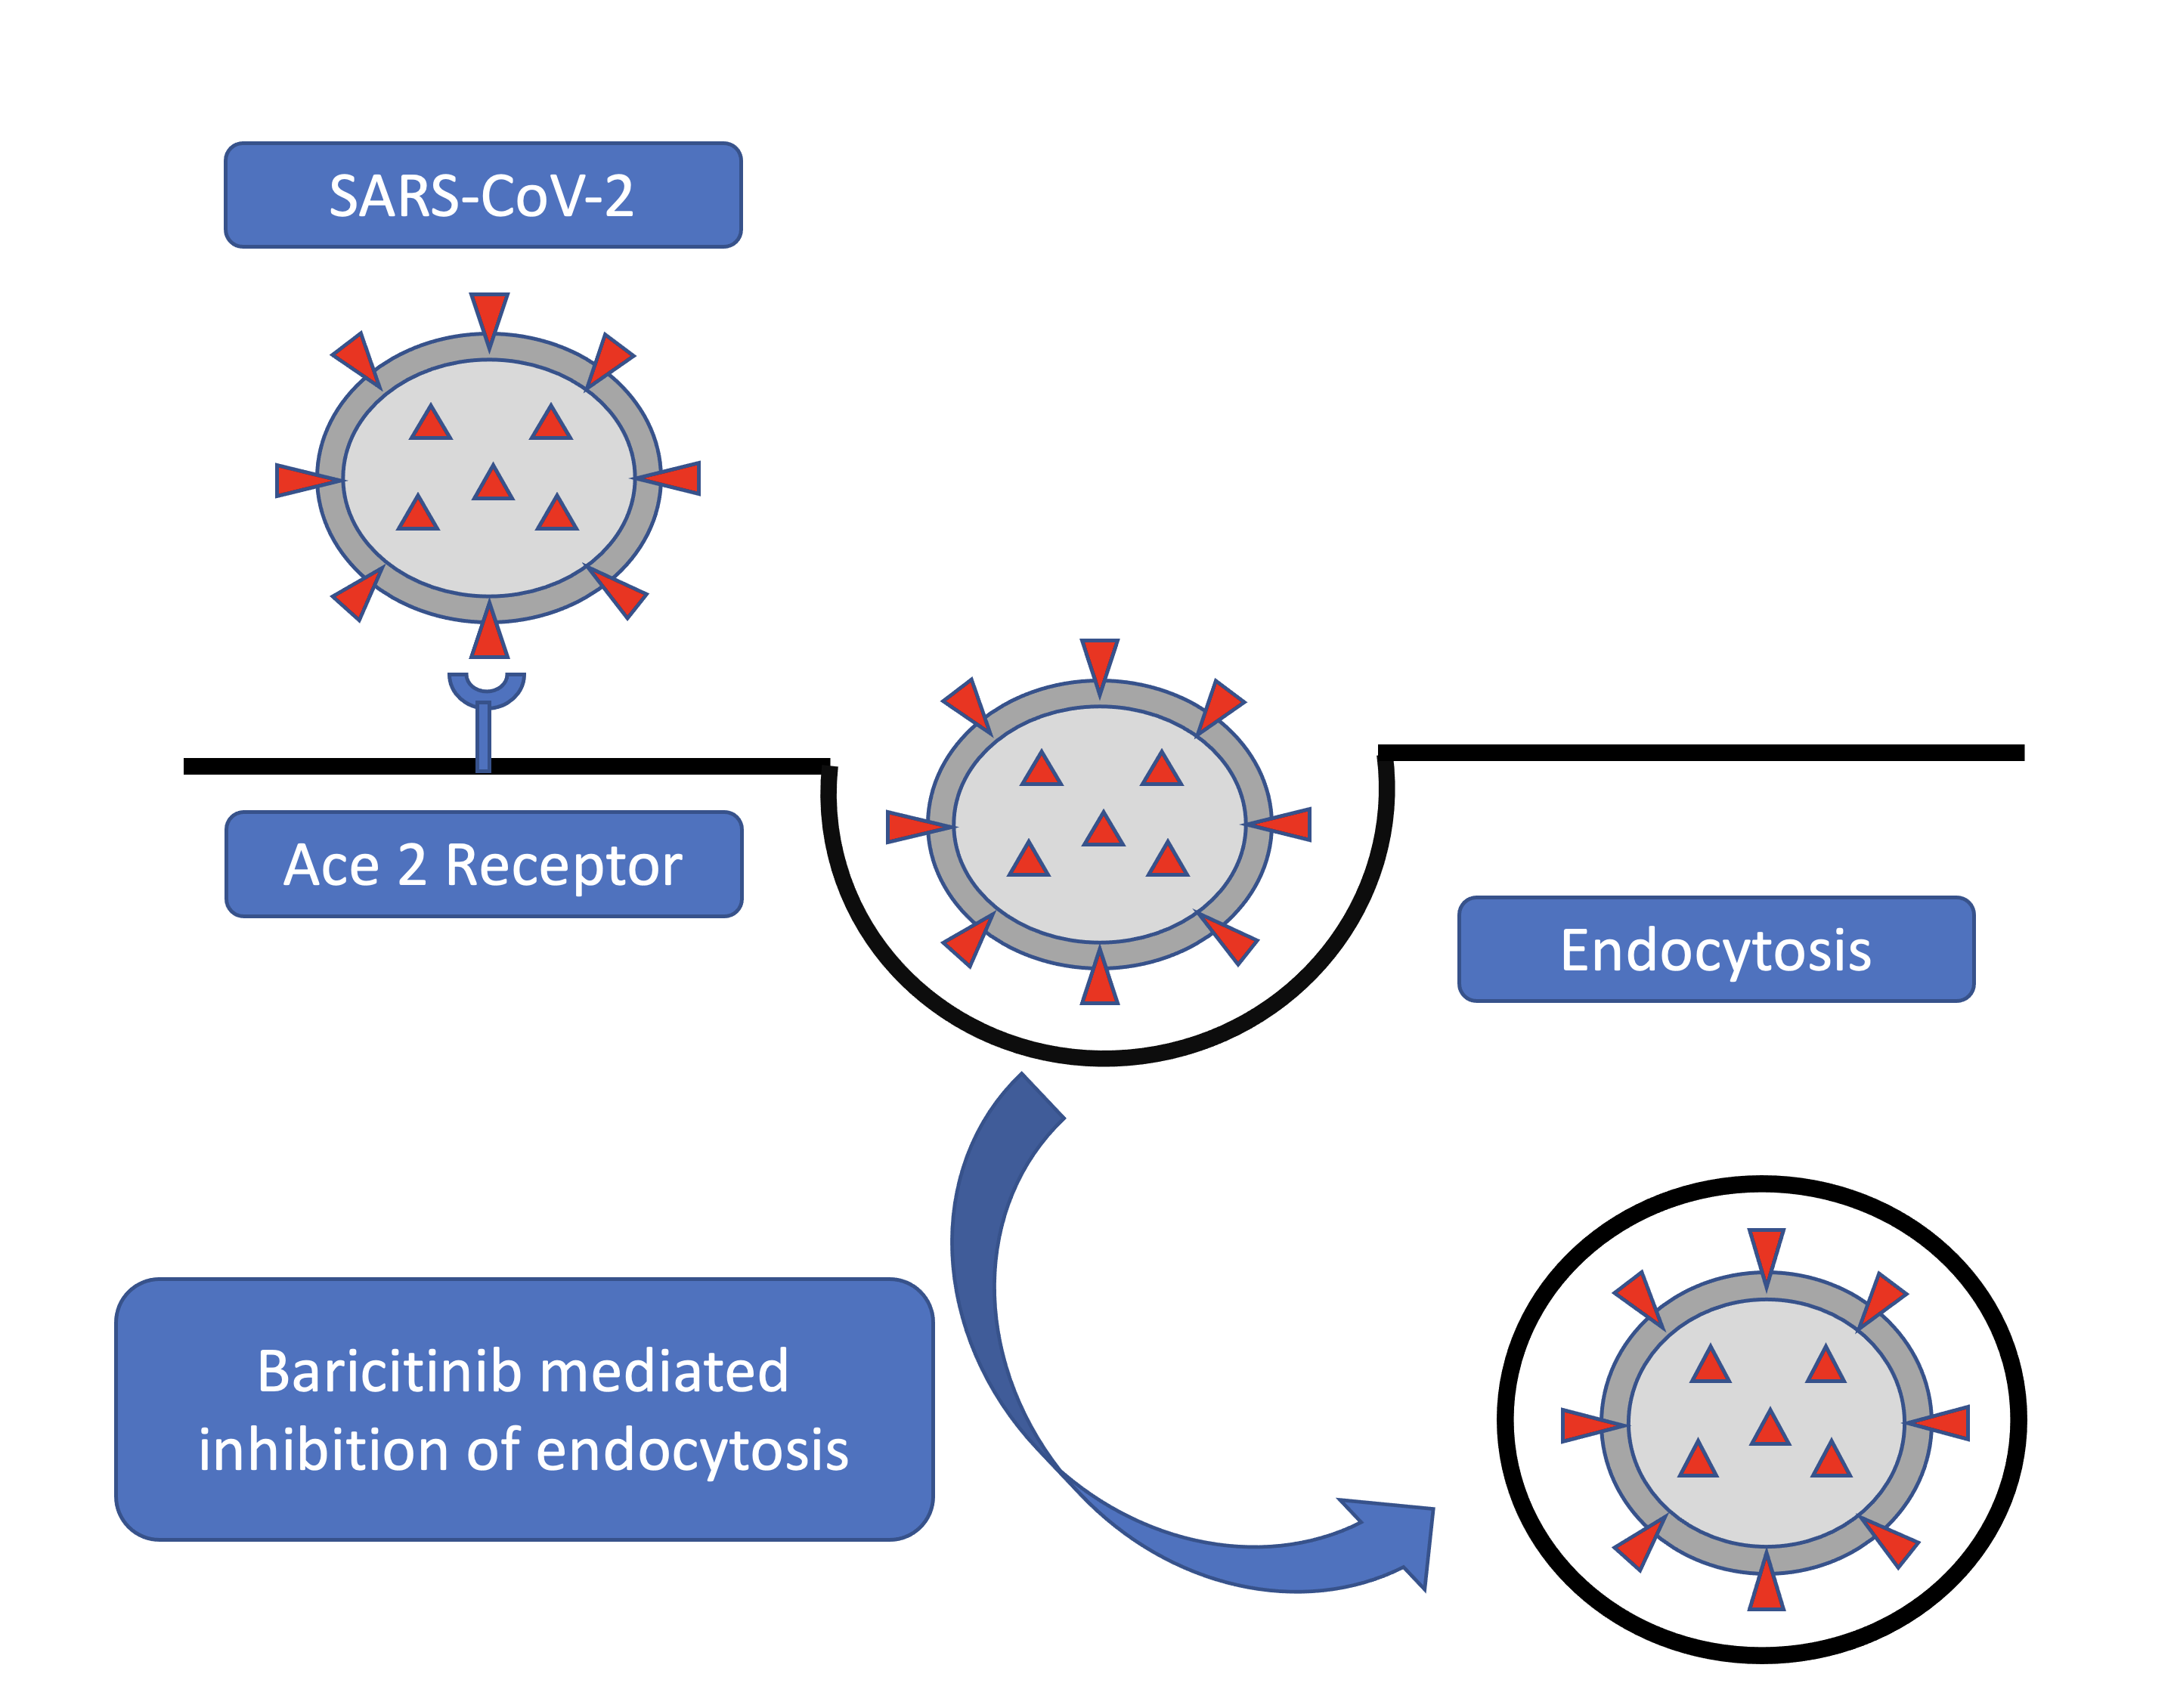 Endocytosis of SARS-CoV-2